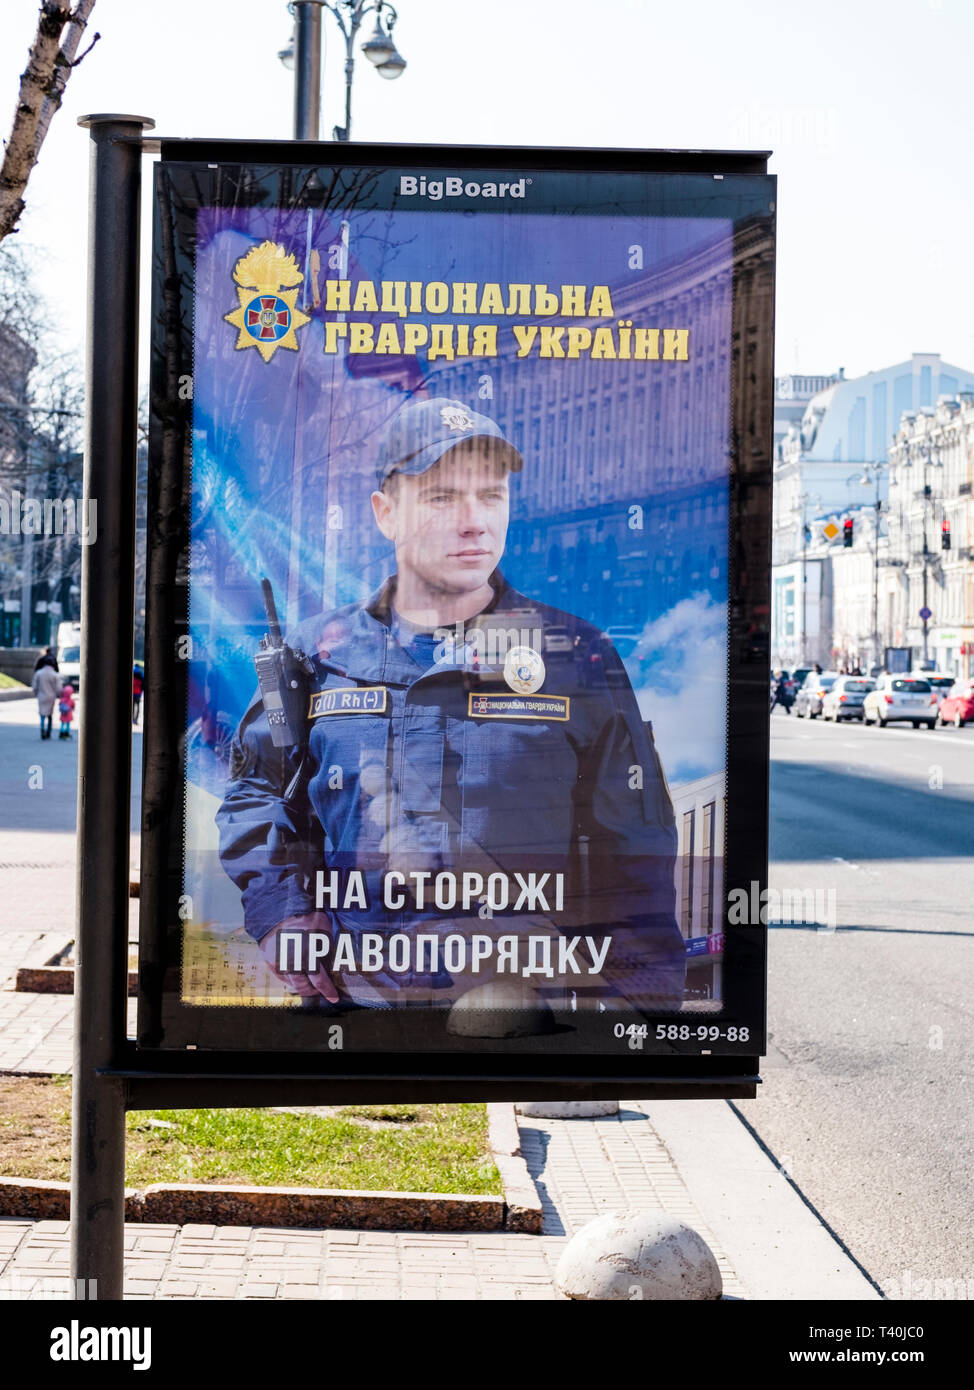 La publicité pour les forces de sécurité à Kiev, Ukraine, 2019. L'Ukraine a été dans un conflit armé avec les séparatistes de la région pour plusieurs y Donbass Banque D'Images